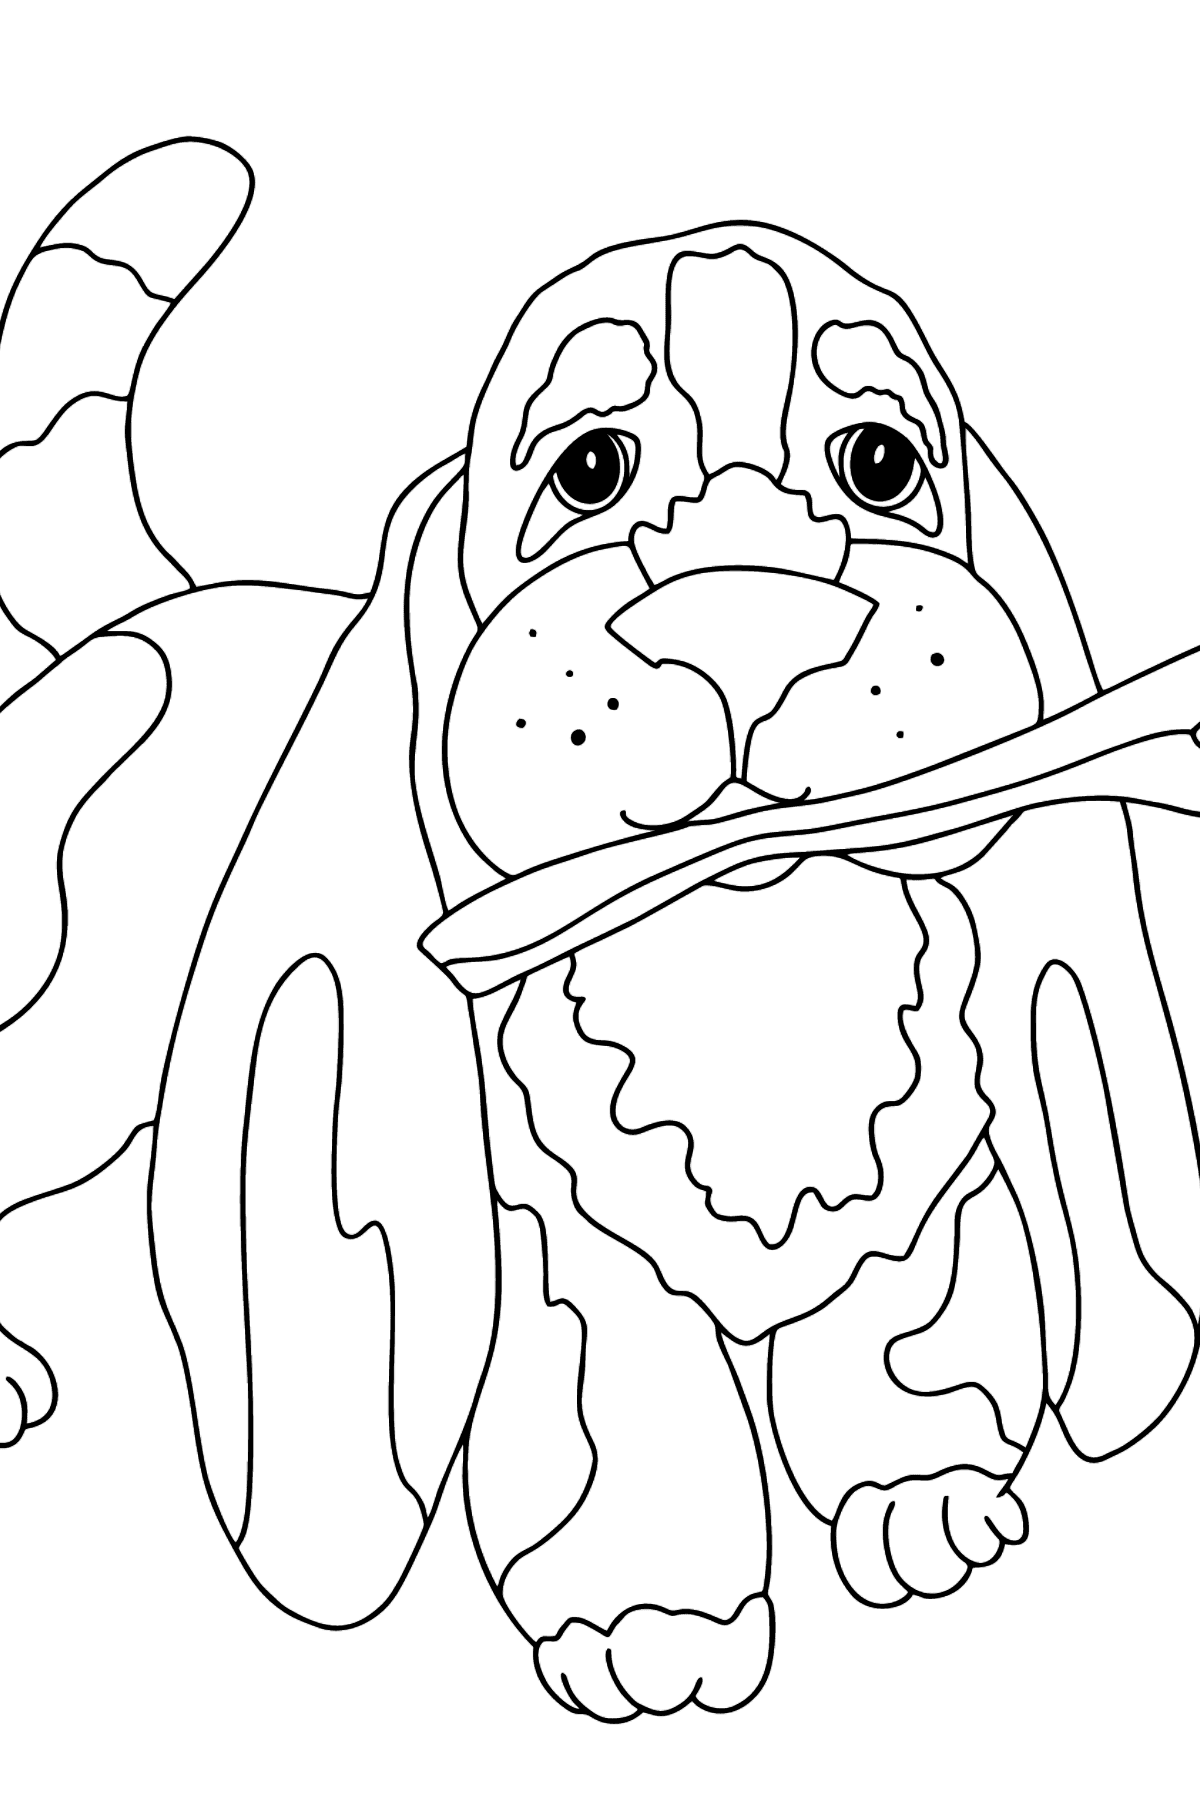 Ausmalbild - Ein Hund spielt mit einem Stöckchen - Malvorlagen für Kinder